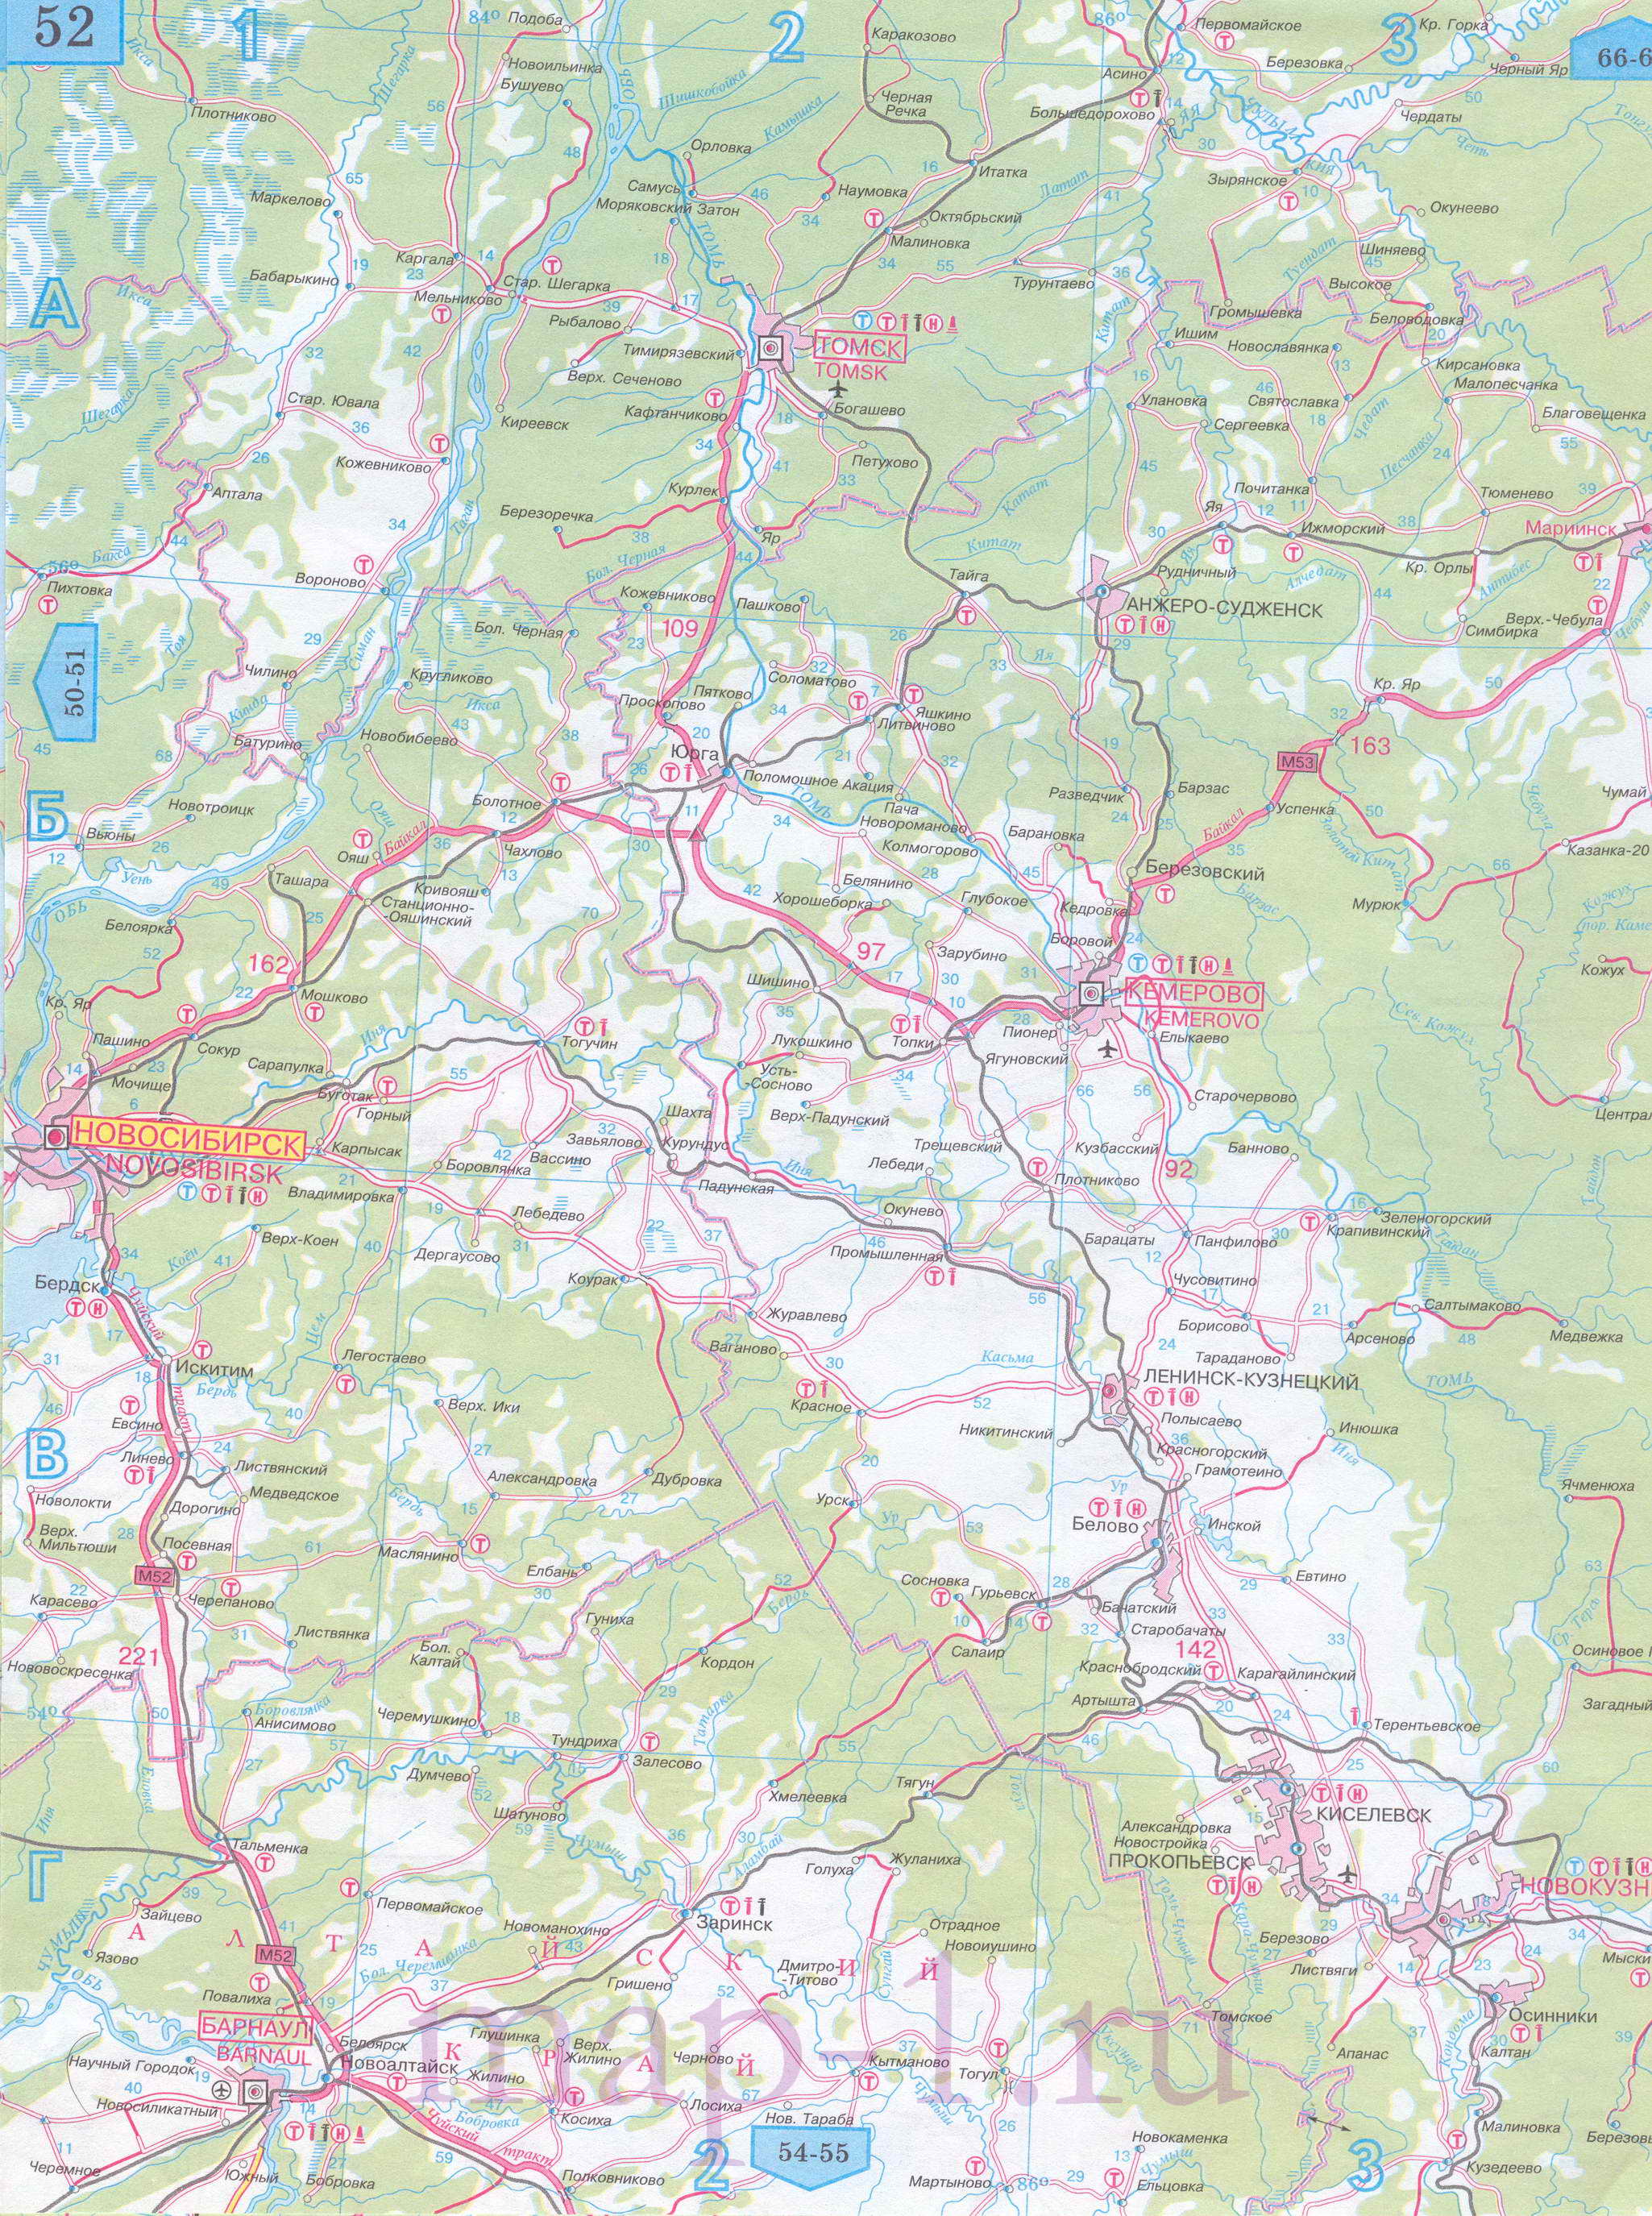 Карта Новосибирской области автомобильная. Подробная карта автомобильных дорог Новосибирской области, масштаб 1см:15км, C0 - 